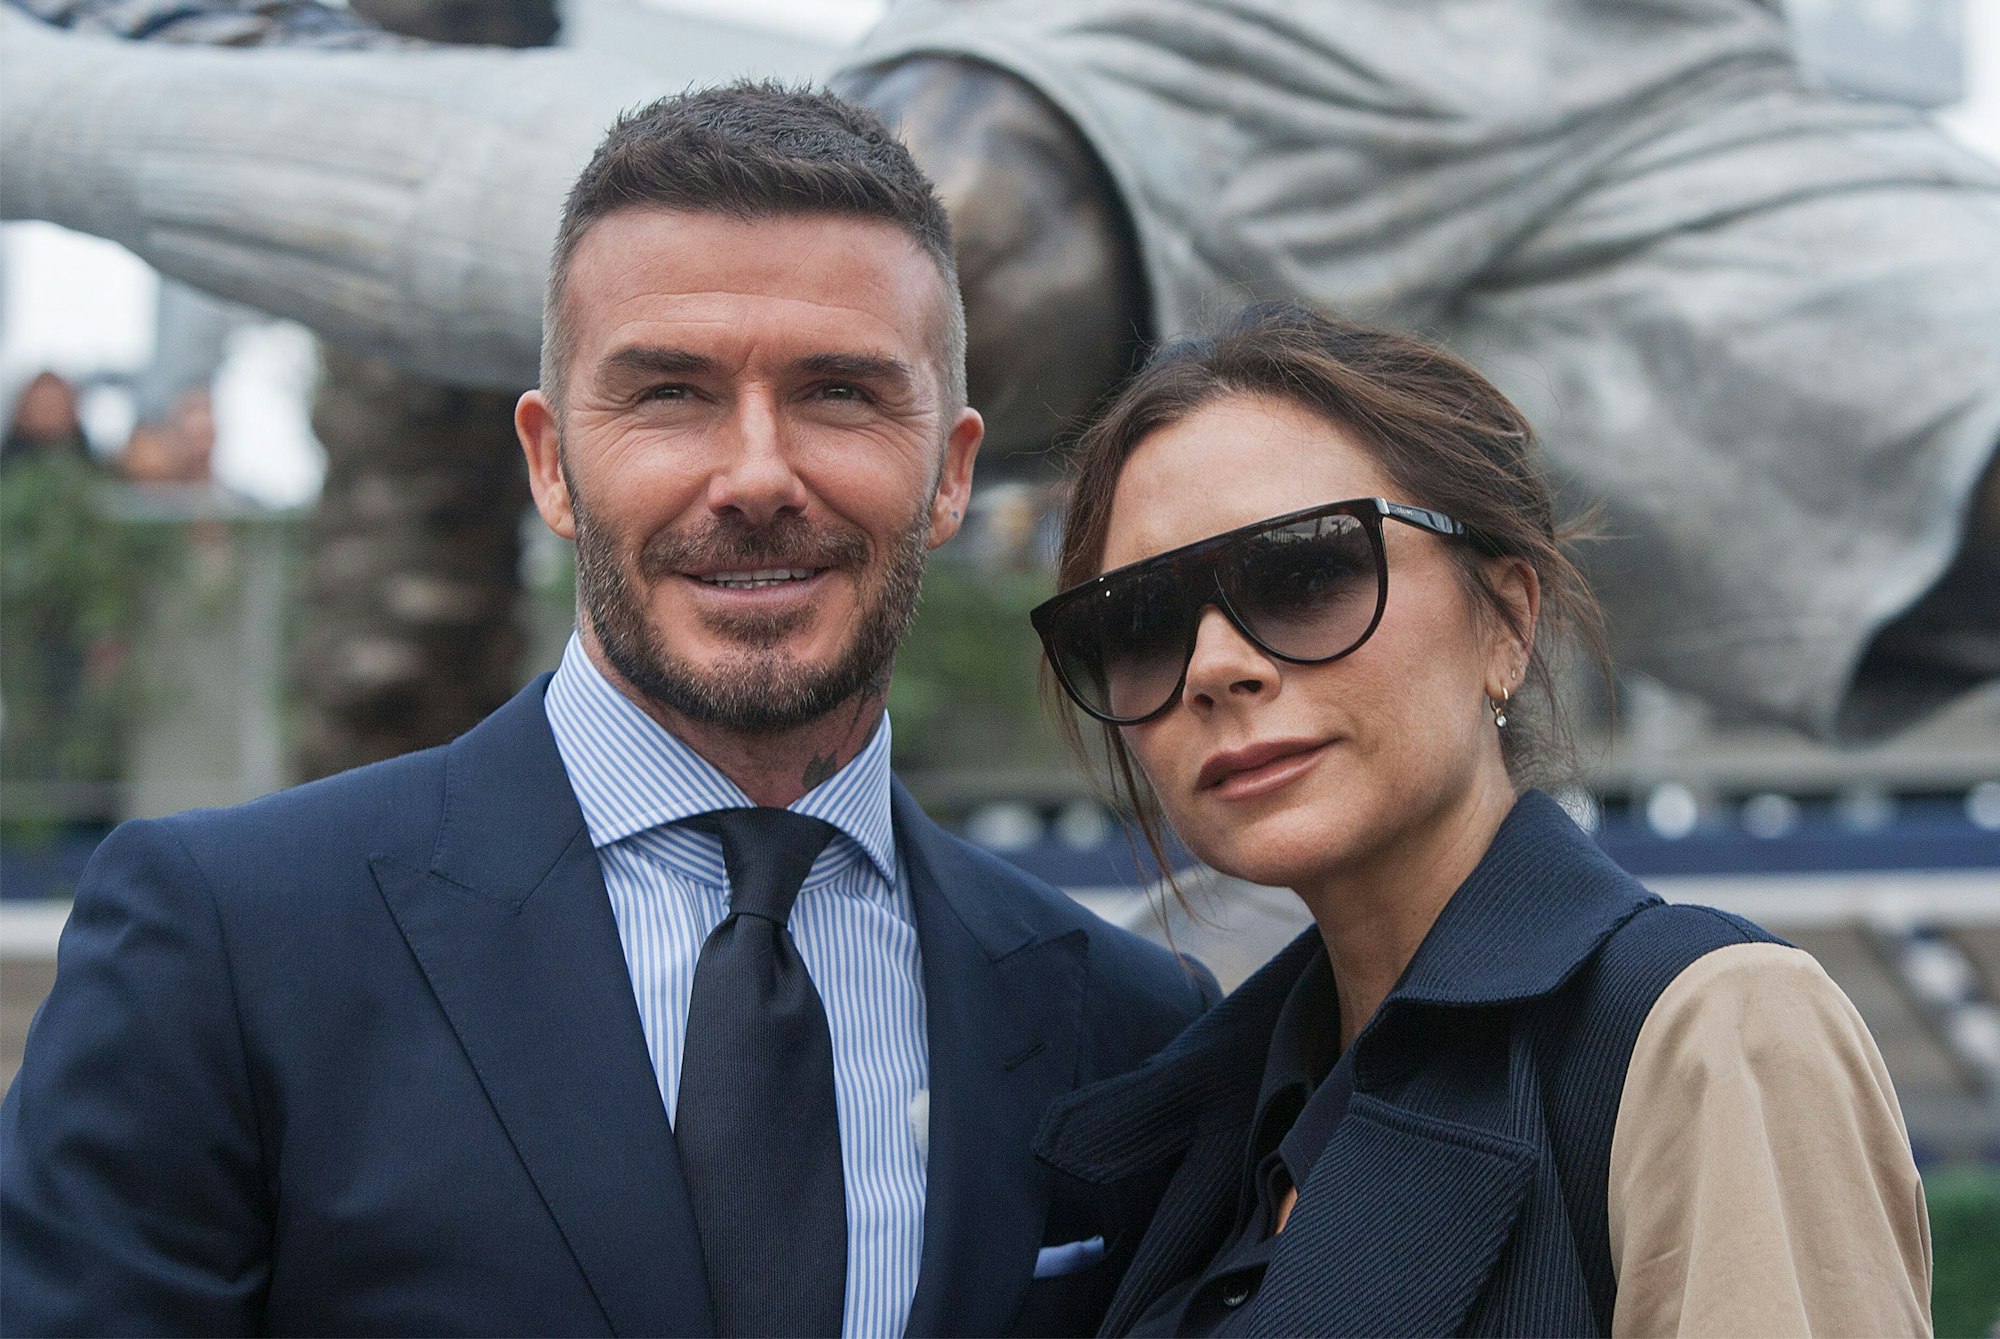 David Beckham, ehemaliger britischer Fußballspieler, und seine Frau Victoria Beckham, Designerin